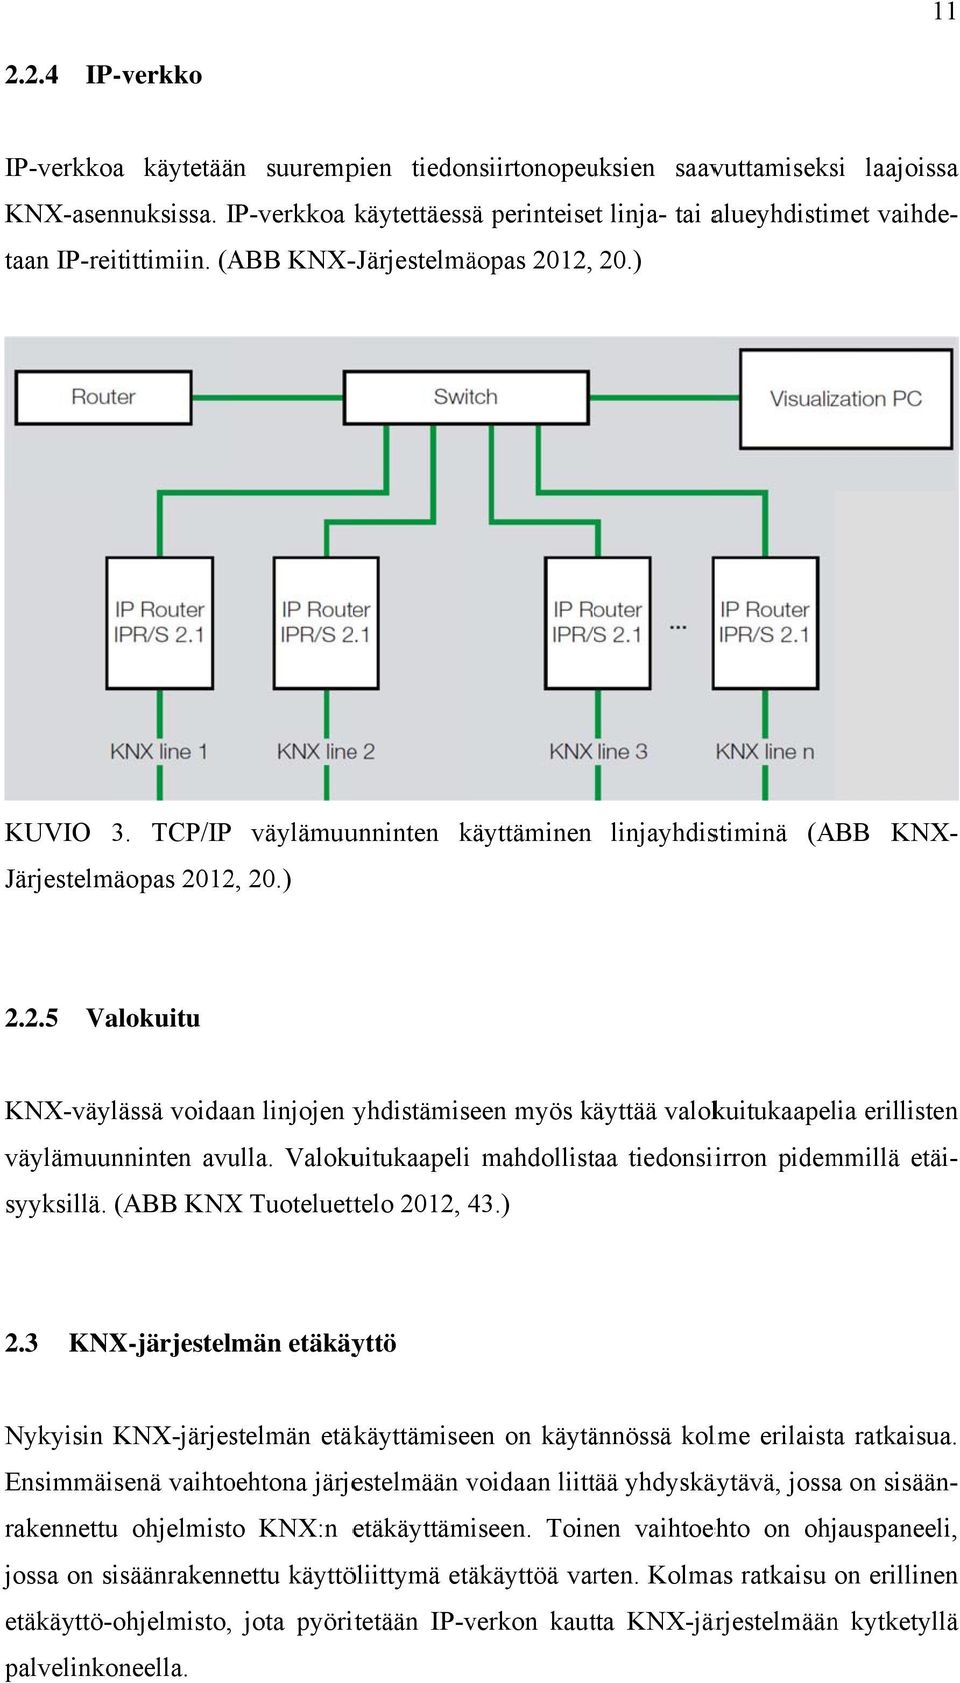 ) linjayhdistiminä (ABB KNX- 2.2.5 Valokuitu KNX-väylässä voidaan linjojen yhdistämiseen myös käyttää valokuitukaapelia erillisten väylämuunninten avulla.